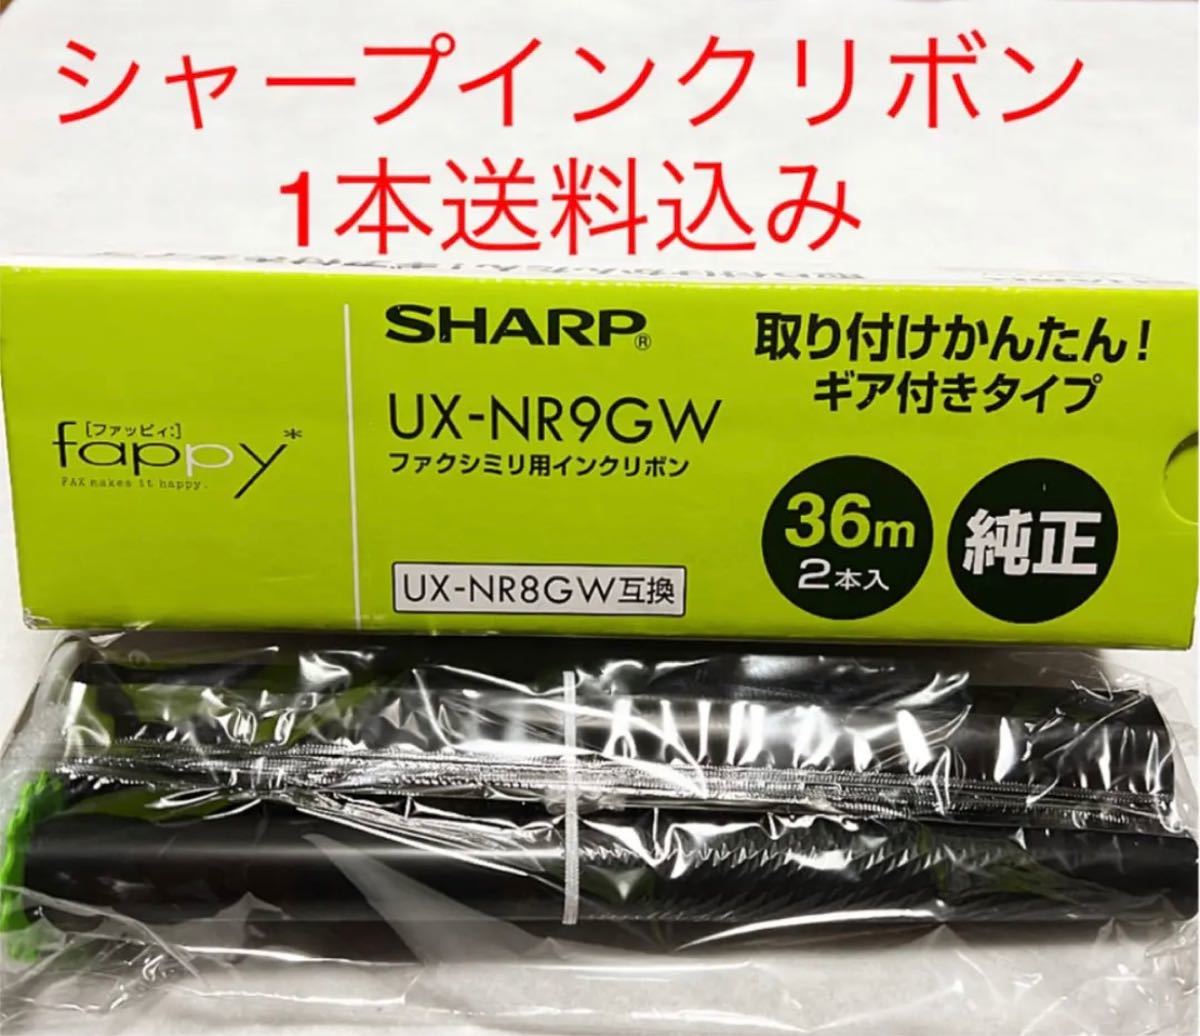 期間限定キャンペーン シャープ SHARP UX-NR9GW 普通紙FAX用カートリッジ一体型インクリボン 36m巻 2本入